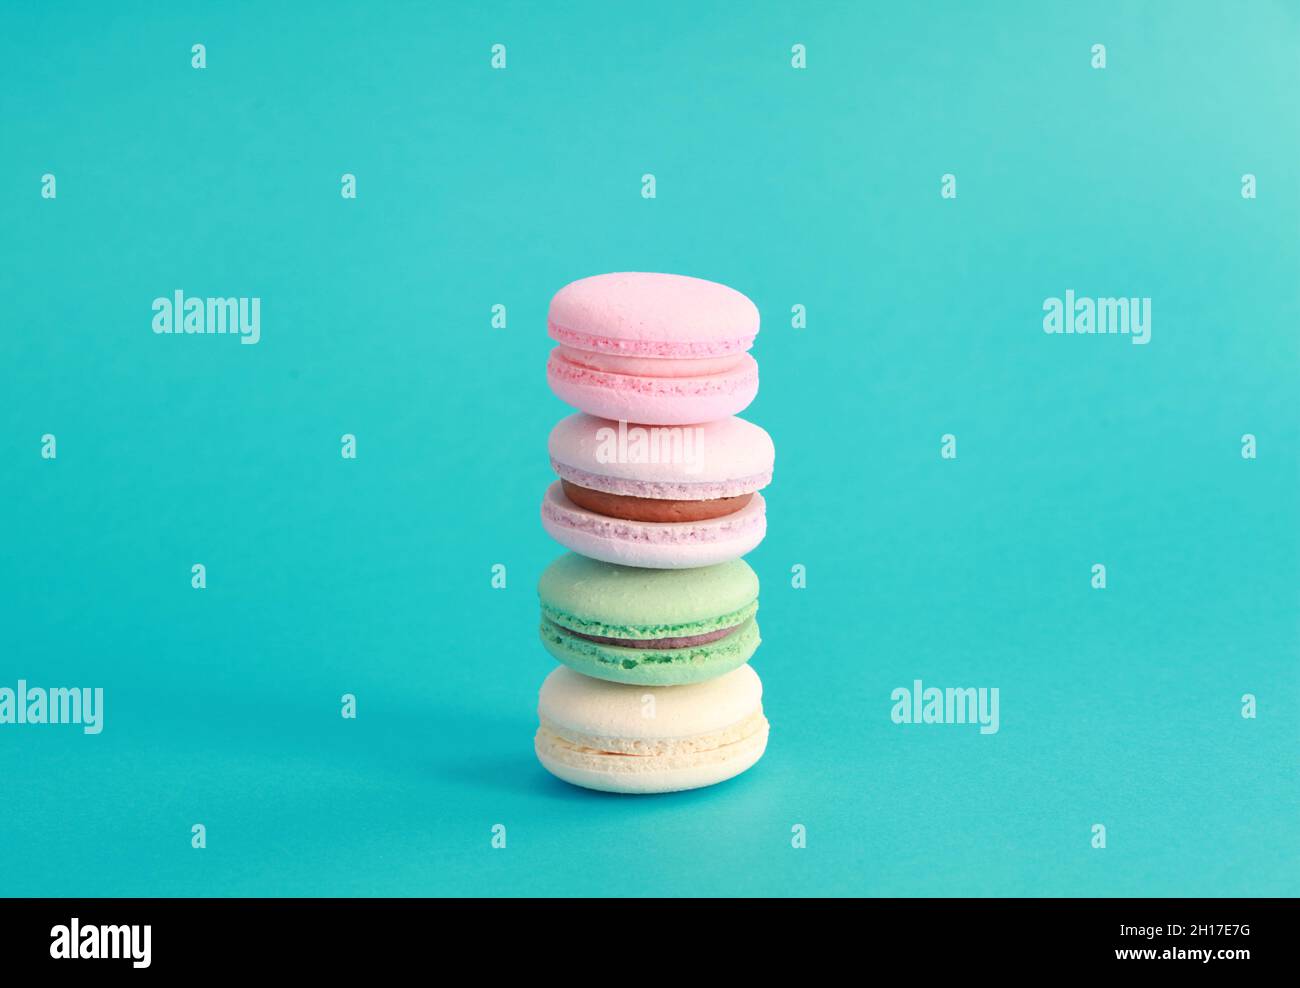 Macaron ou macaron sur fond turquoise, biscuits aux amandes colorés avec différentes garnitures Banque D'Images